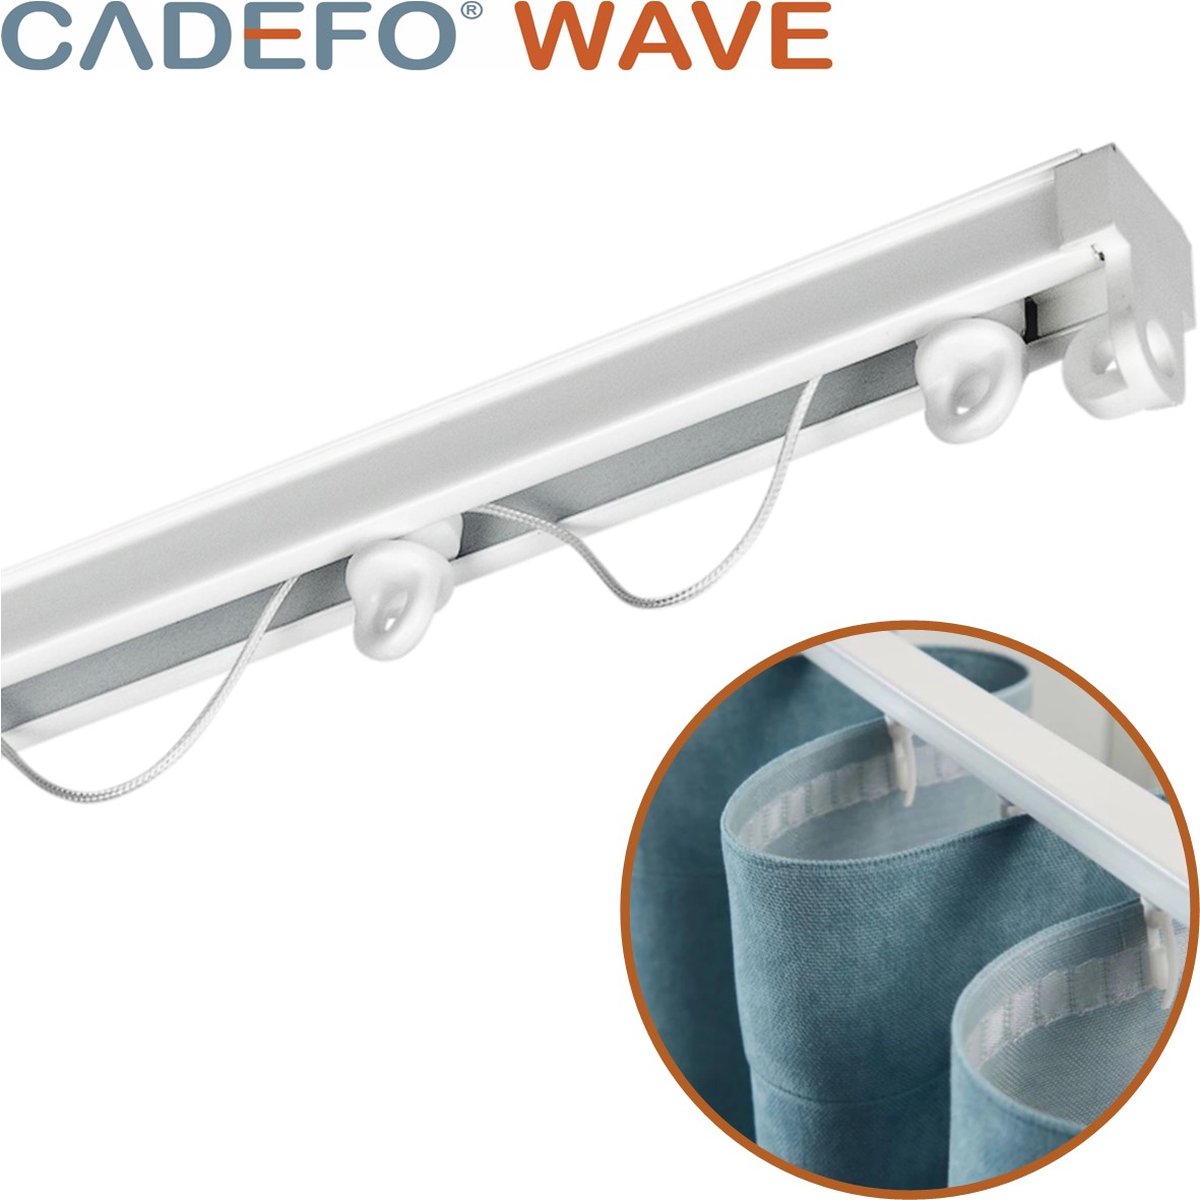 CADEFO WAVE (251 - 300 cm) Gordijnrails - Compleet op maat! - UIT 1 STUK - Leverbaar tot 6 meter - Plafondbevestiging - Lengte 271 cm